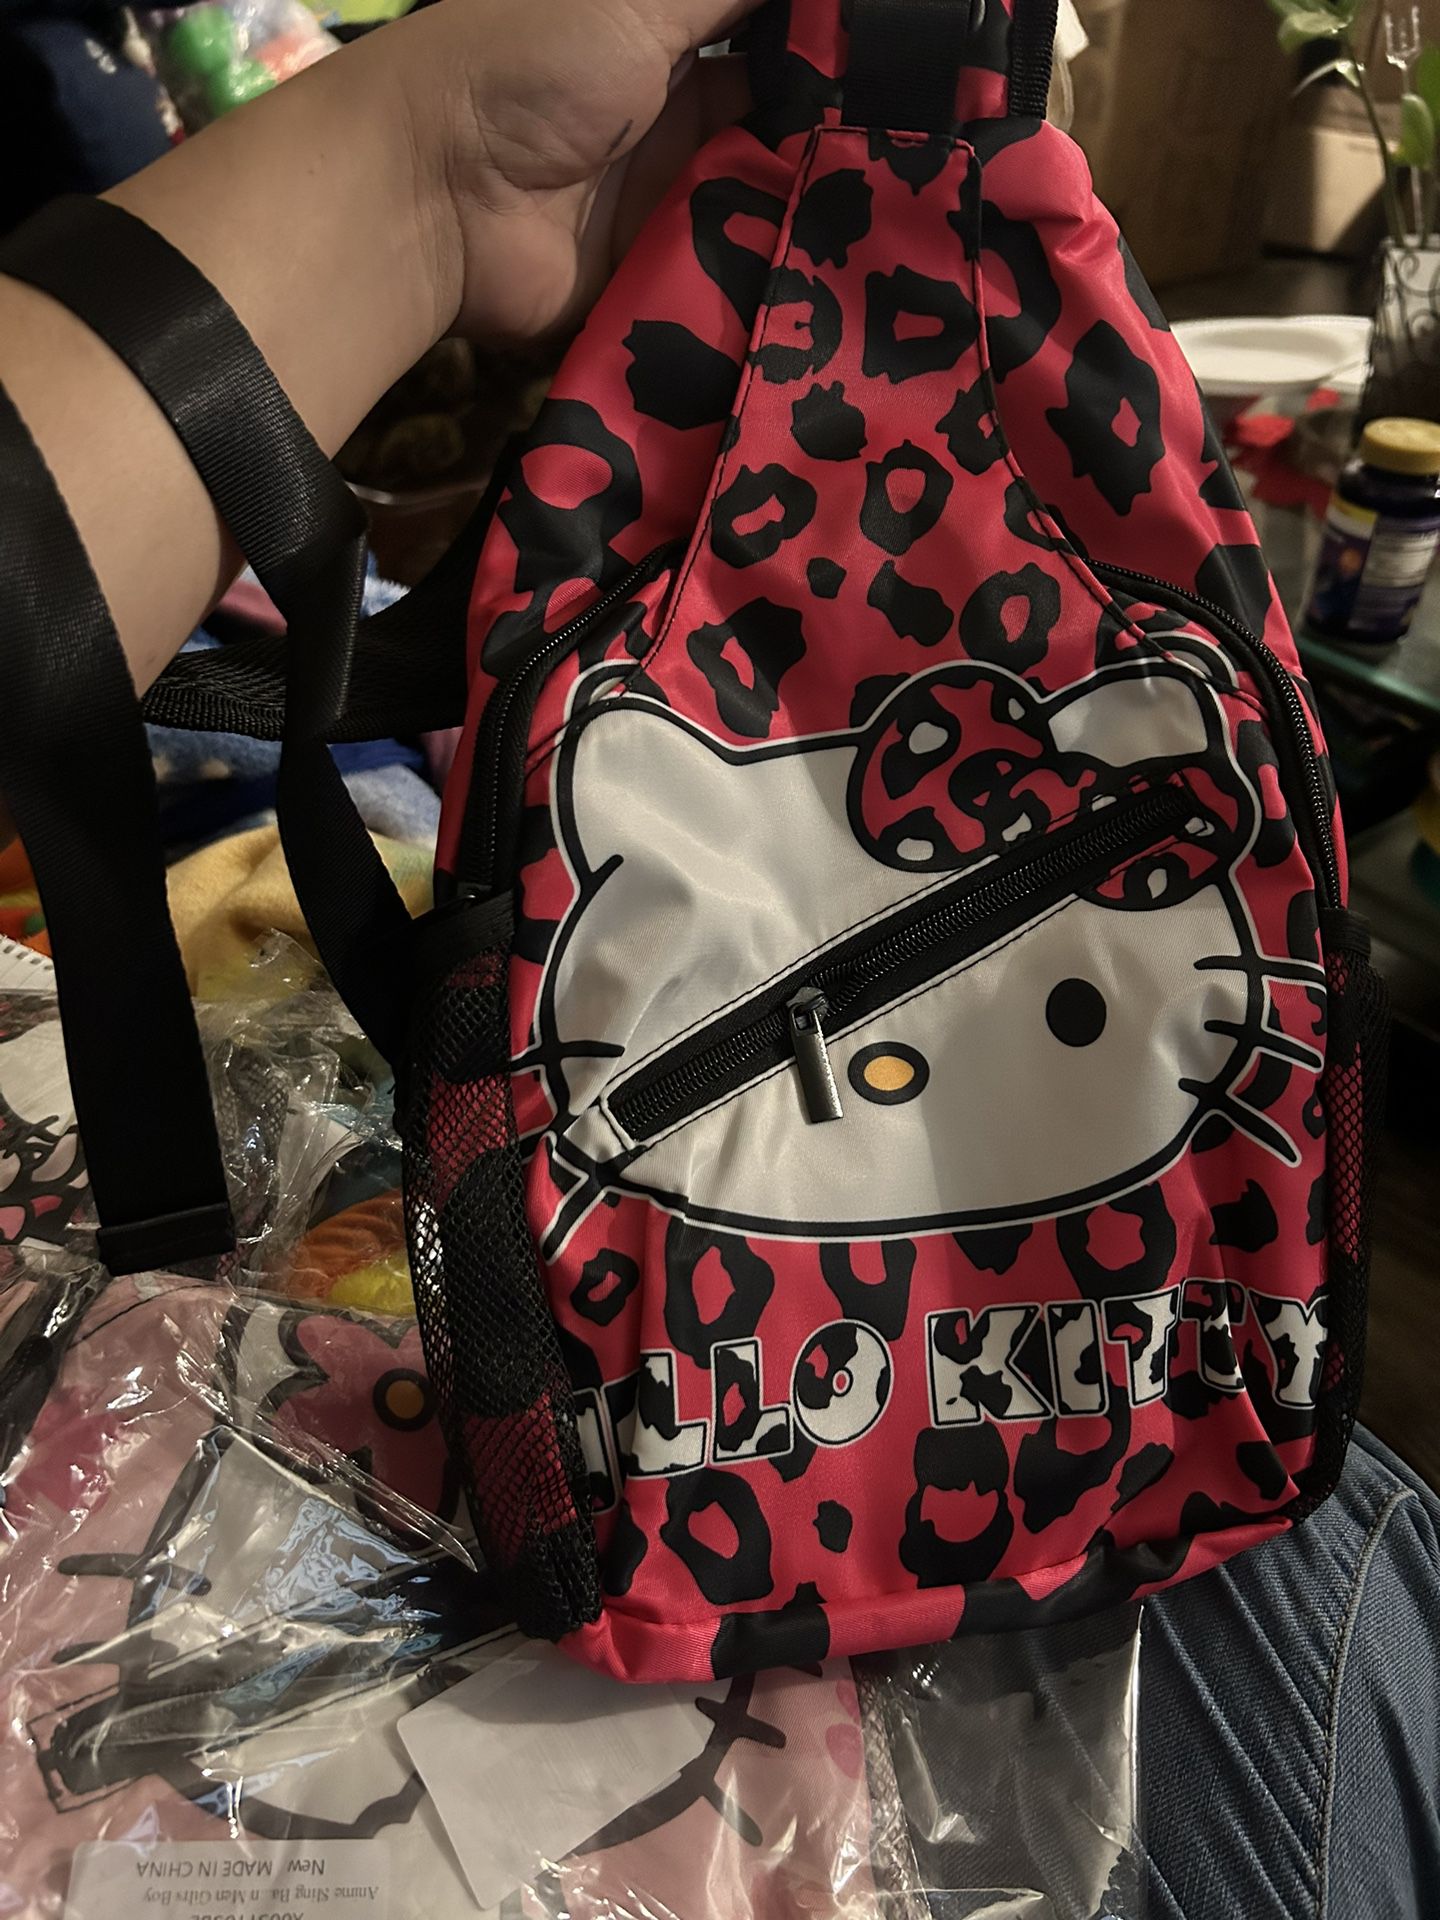 Hello Kitty Bag 